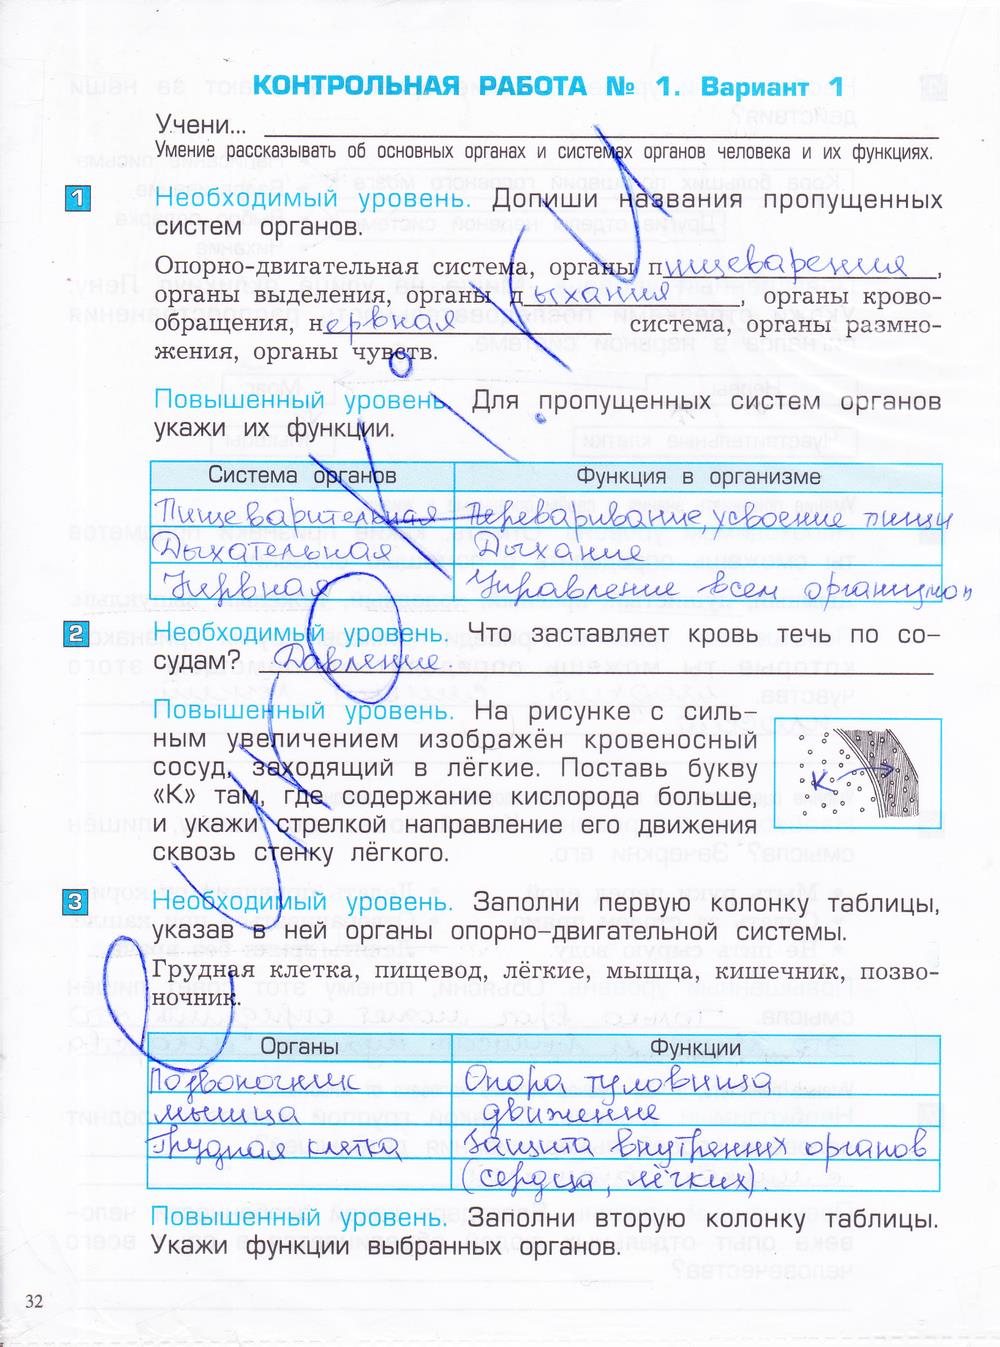 гдз 4 класс проверочные и контрольные работы часть 1 страница 32 окружающий мир Вахрушев, Бурский, Родыгина